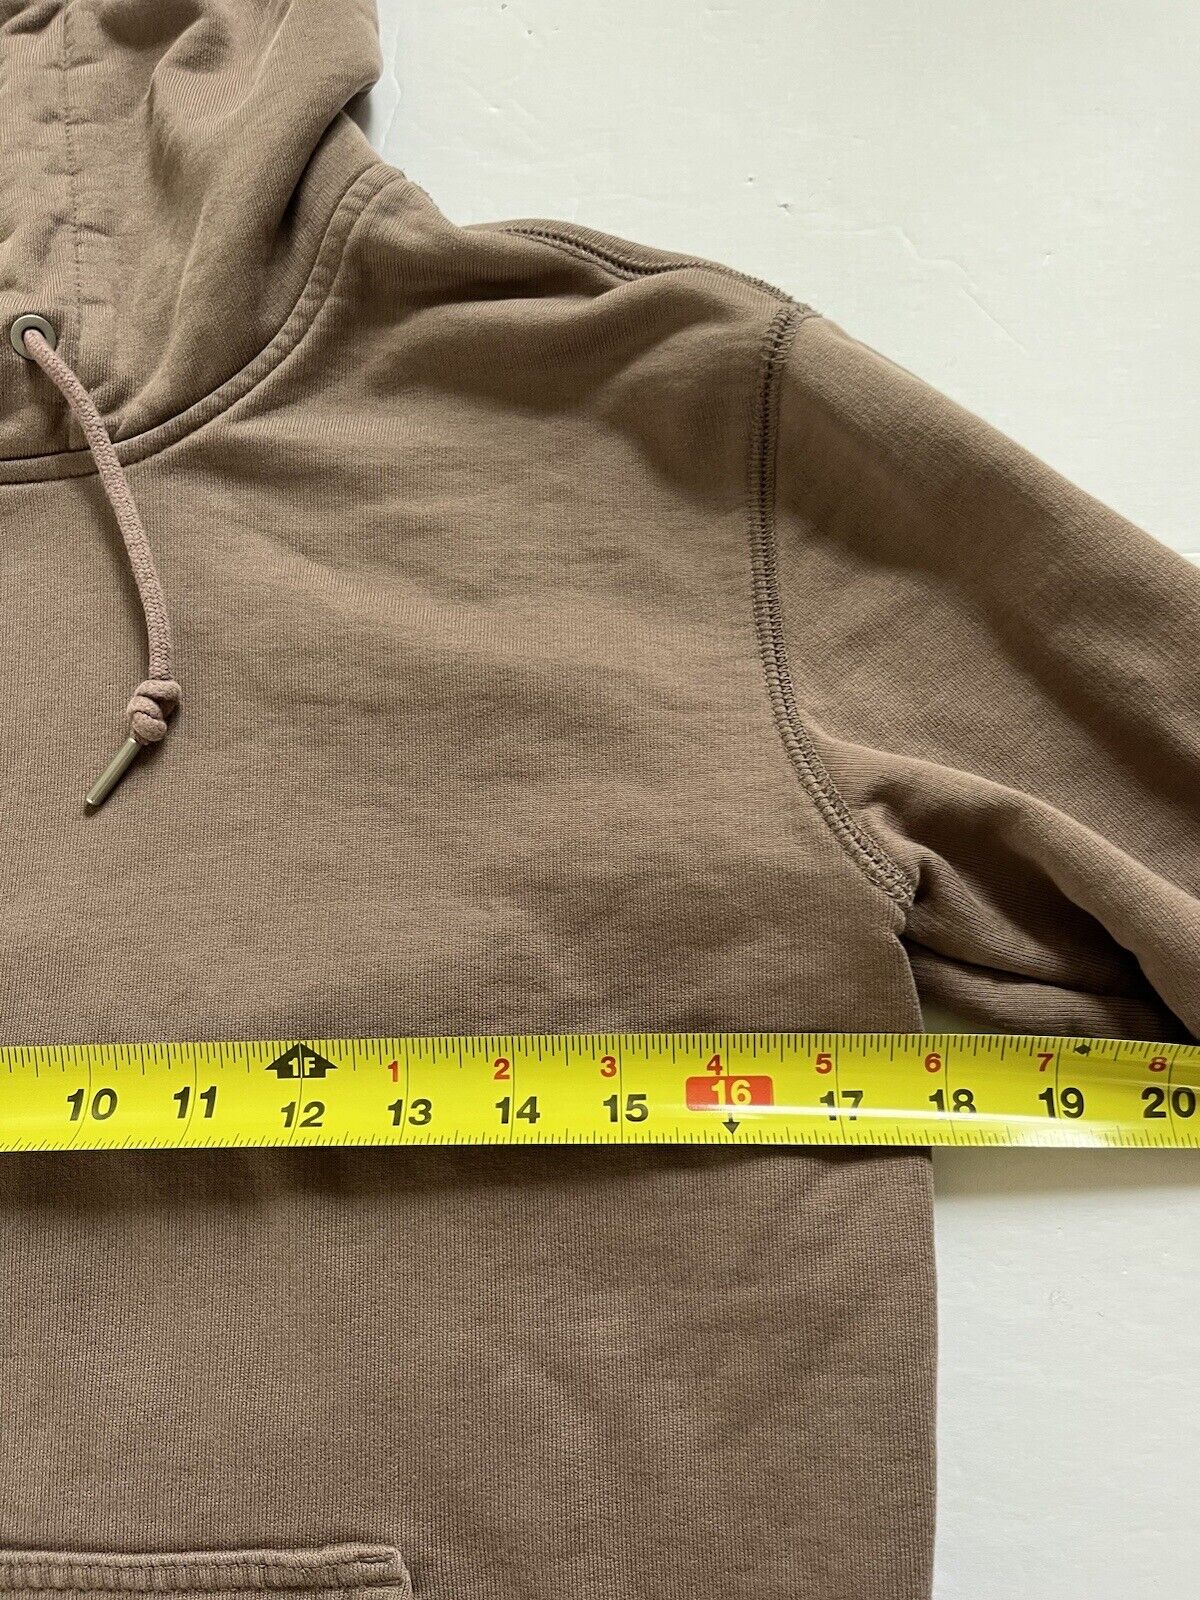 Everlane Uniform Hooded Sweatshirt Size XS Brown - image 6